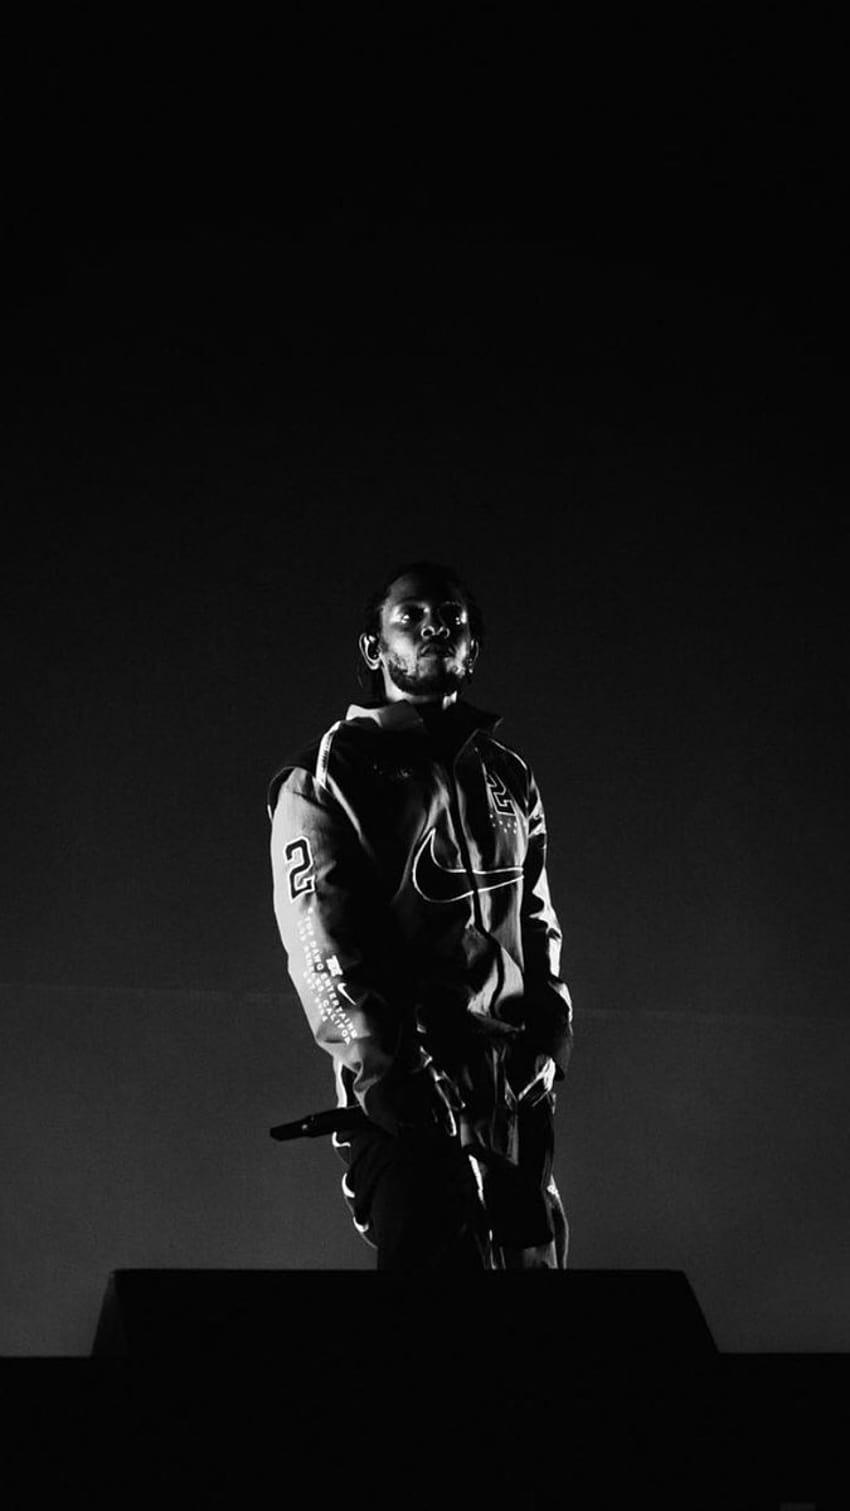 Download Rapper Kendrick Lamar In Aesthetic Wallpaper